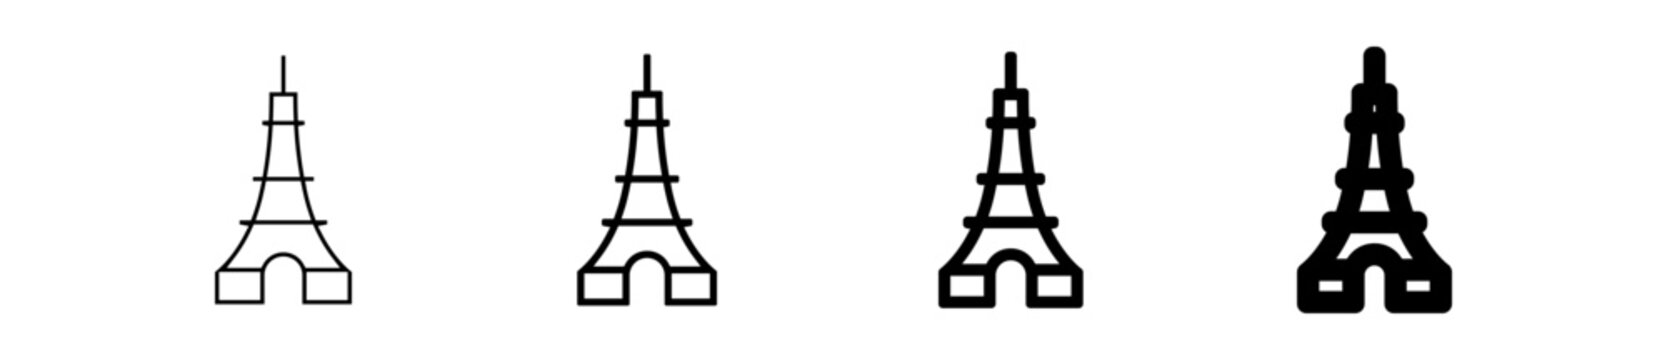 Icones symbole picto tour eiffel paris france